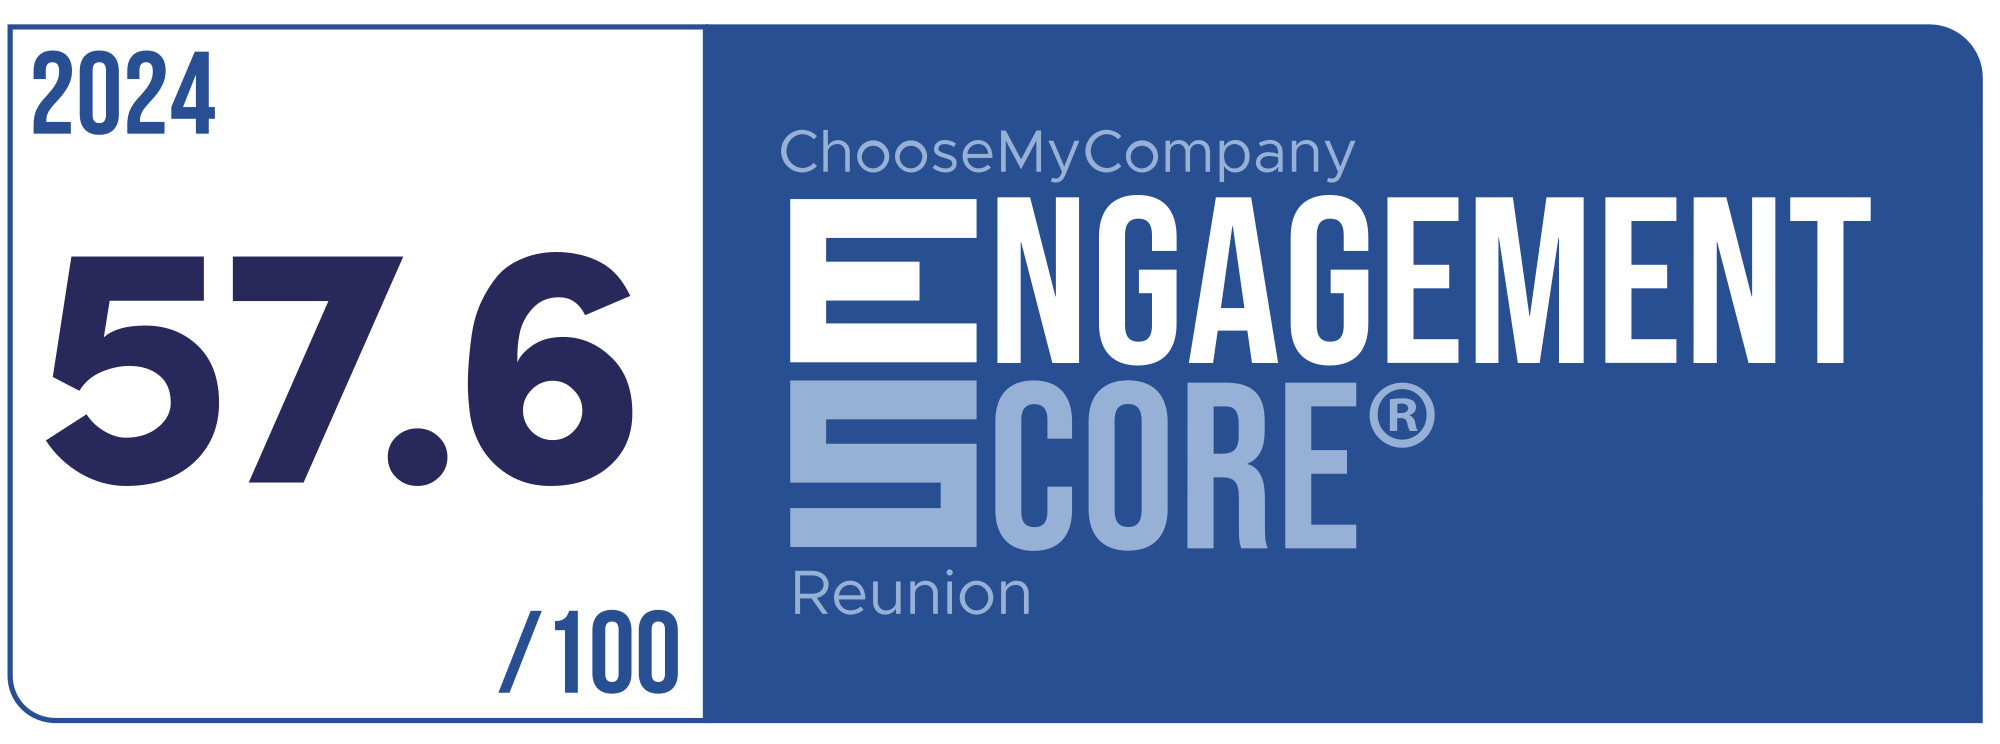 Label Engagement Score 2024 Reunion